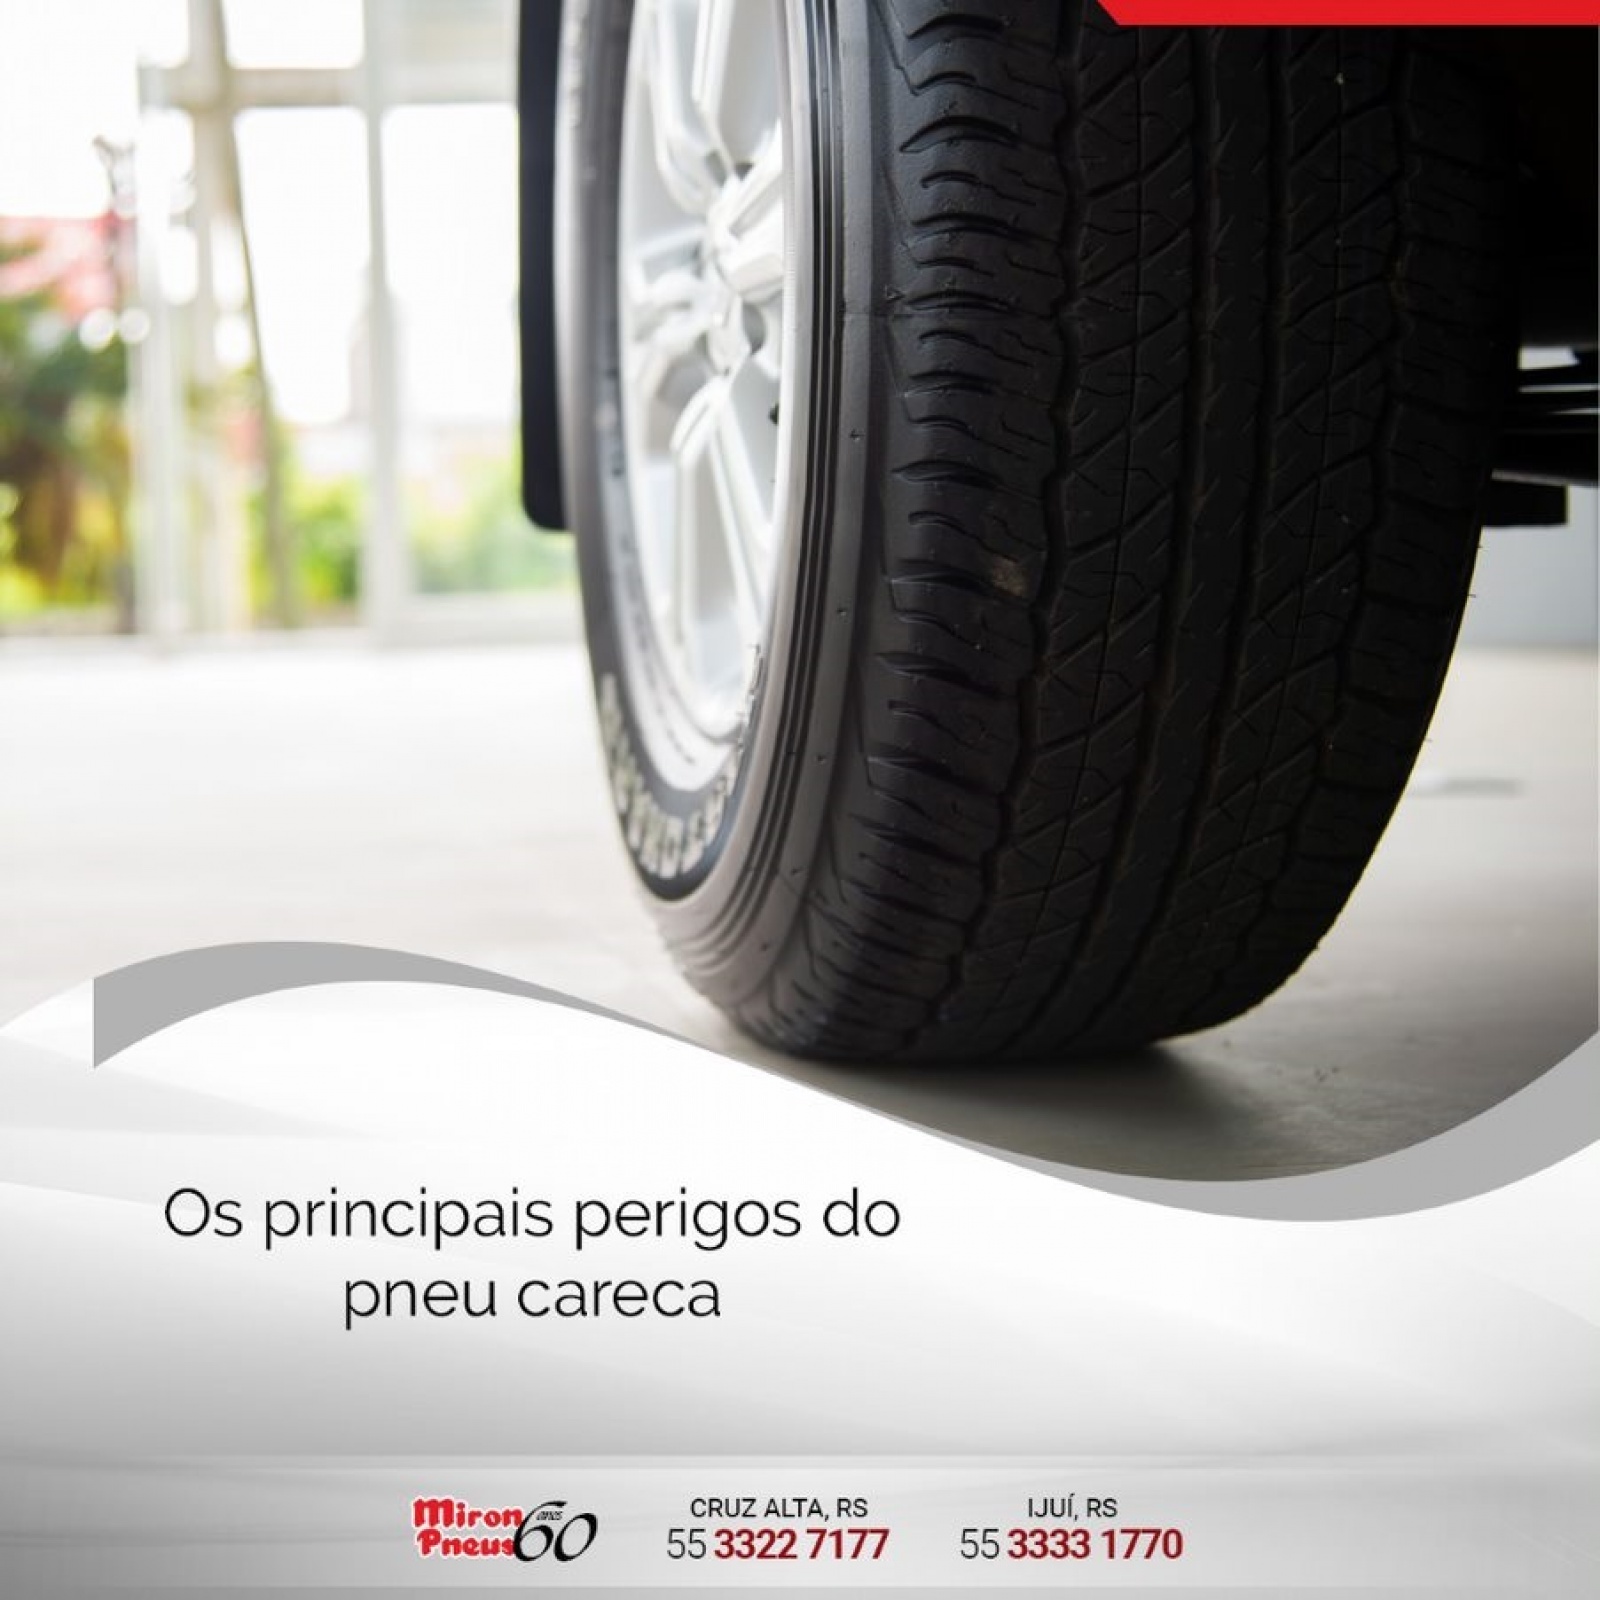 Os principais perigos do pneu careca